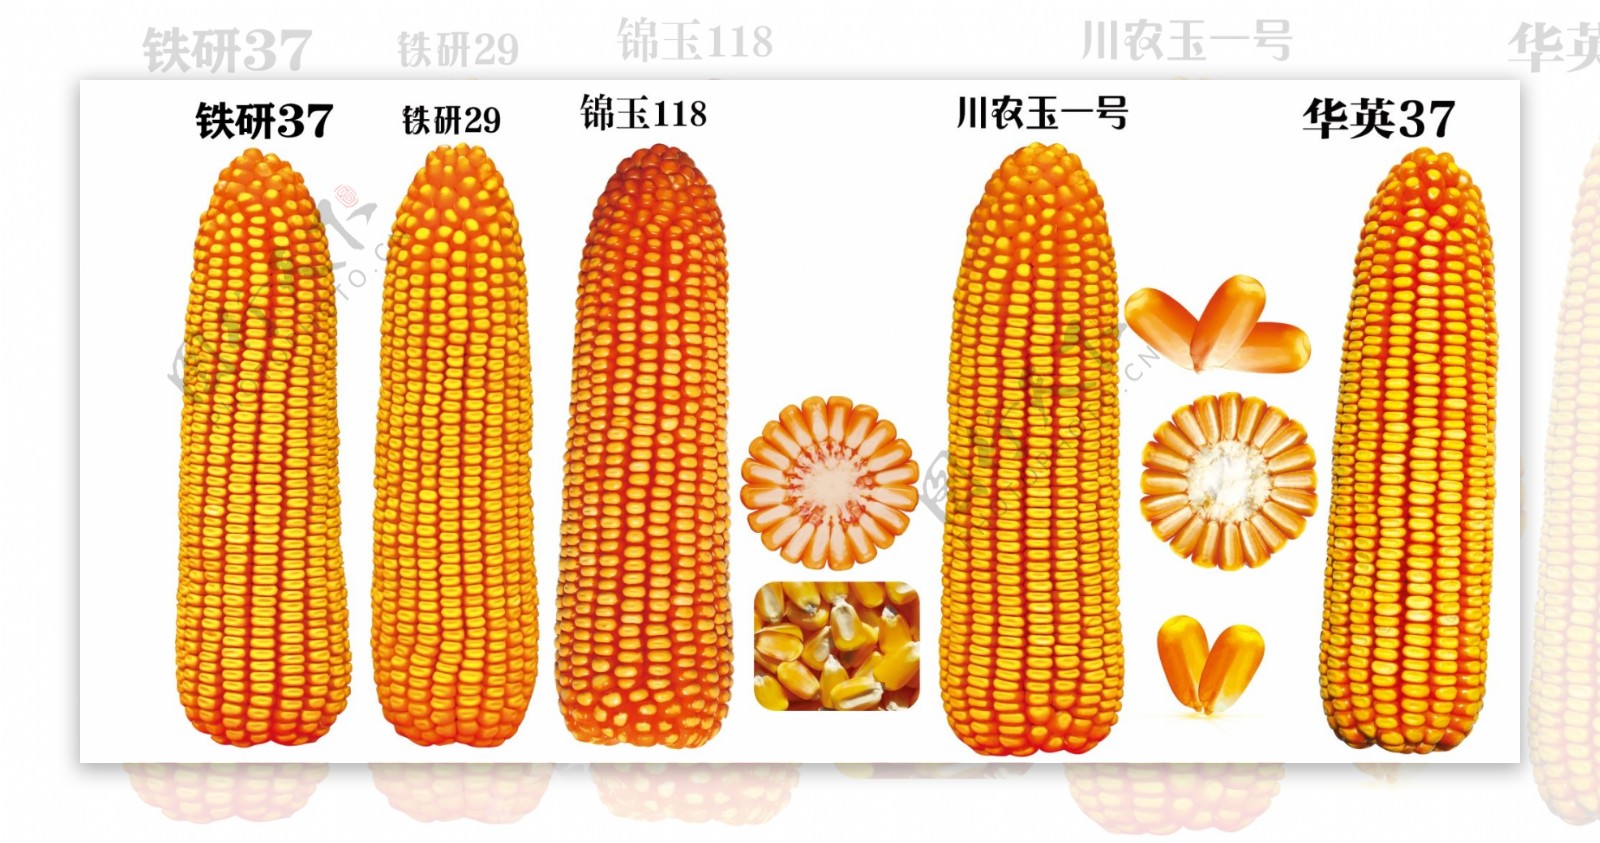 玉米图案